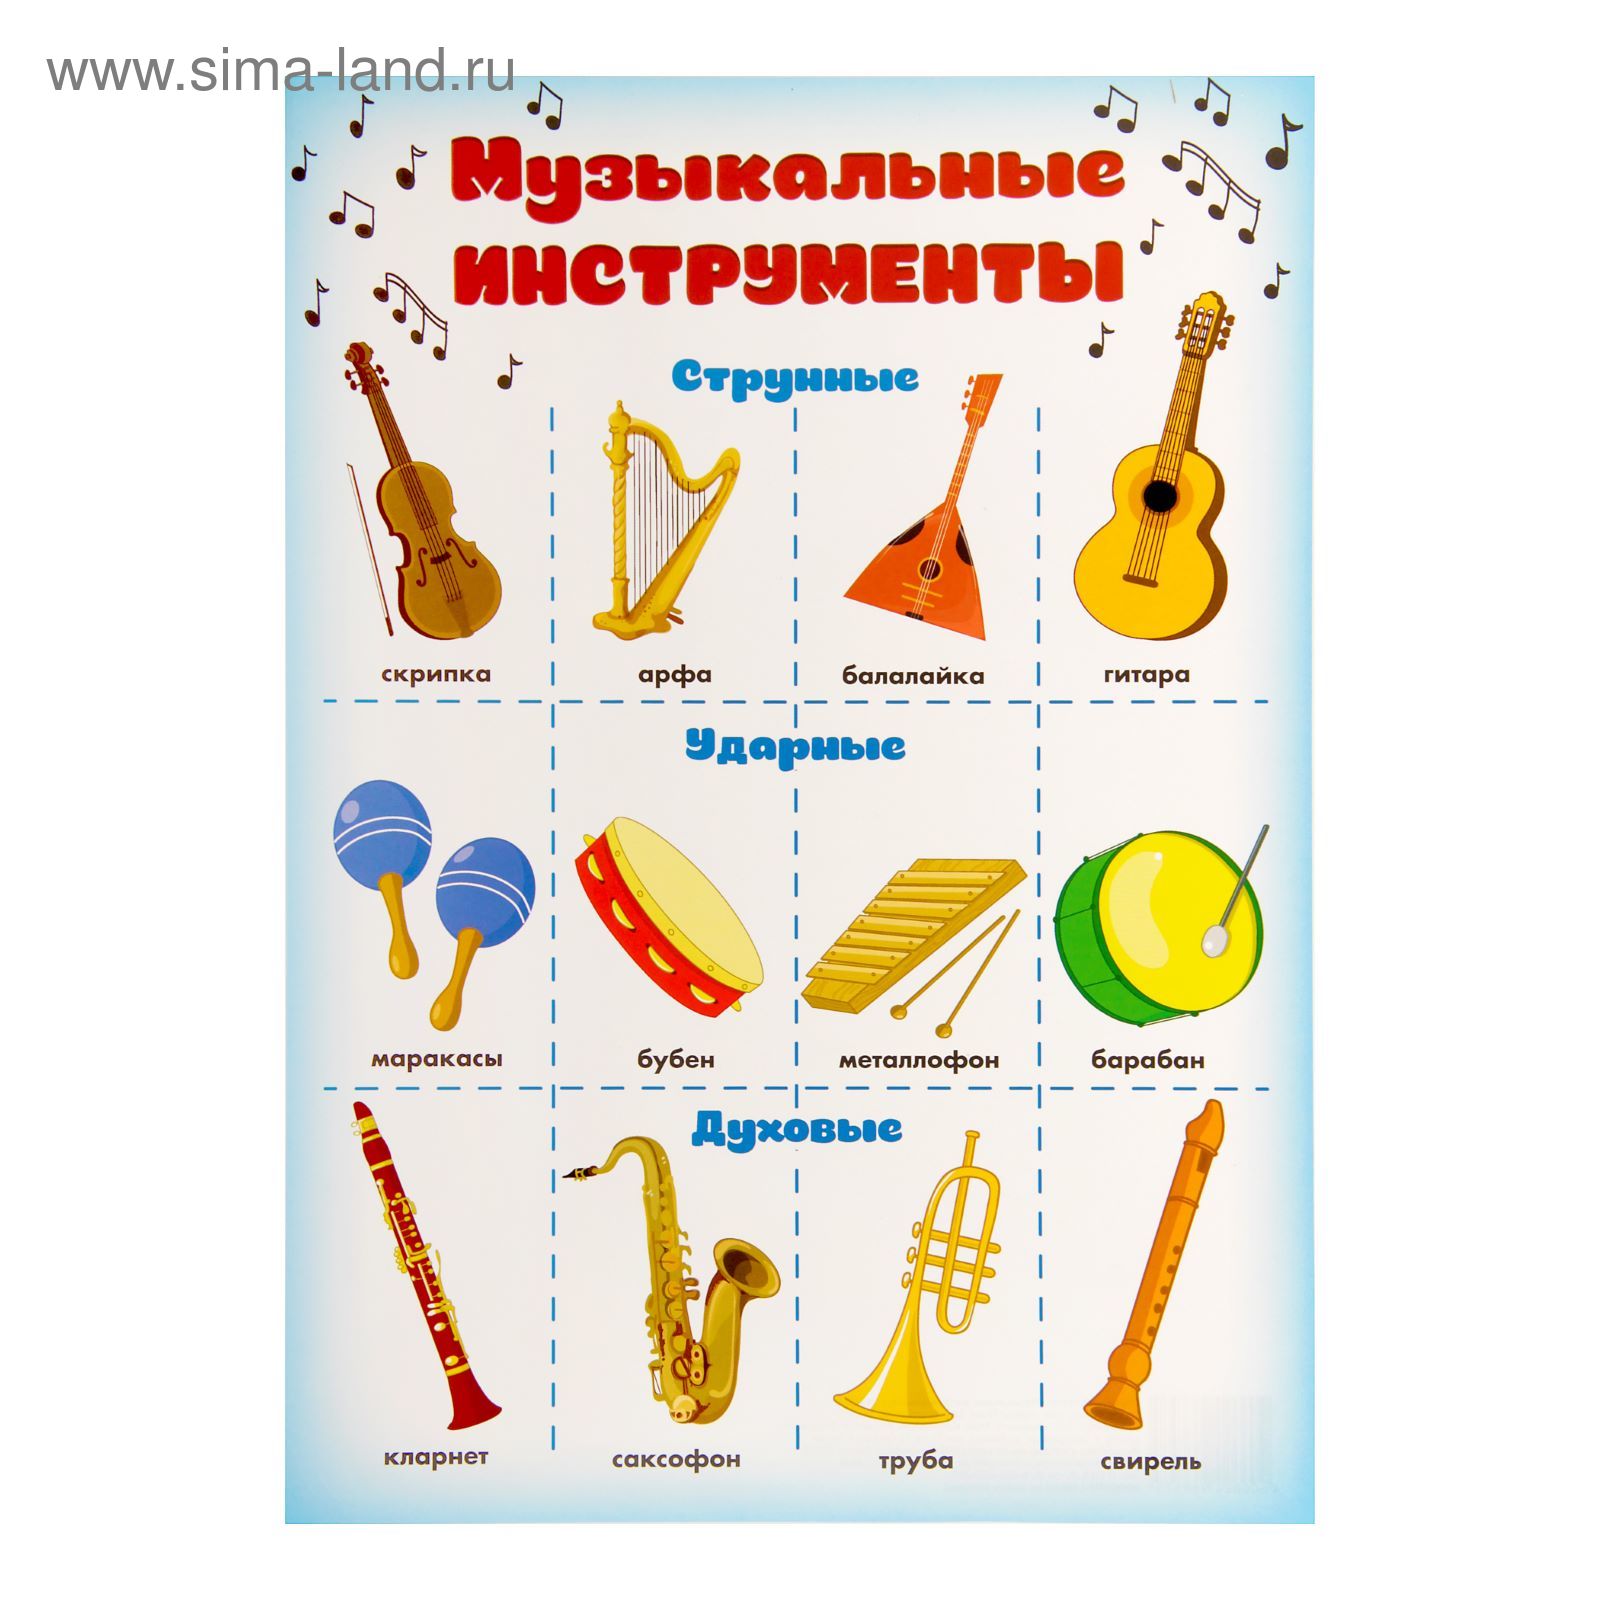 Музыкальные инструменты. Плакат музыкальные инструменты. Музыкальные инструменты для дошкольников. Детские музыкальные инструменты с названиями. Обучающие музыкальные инструменты